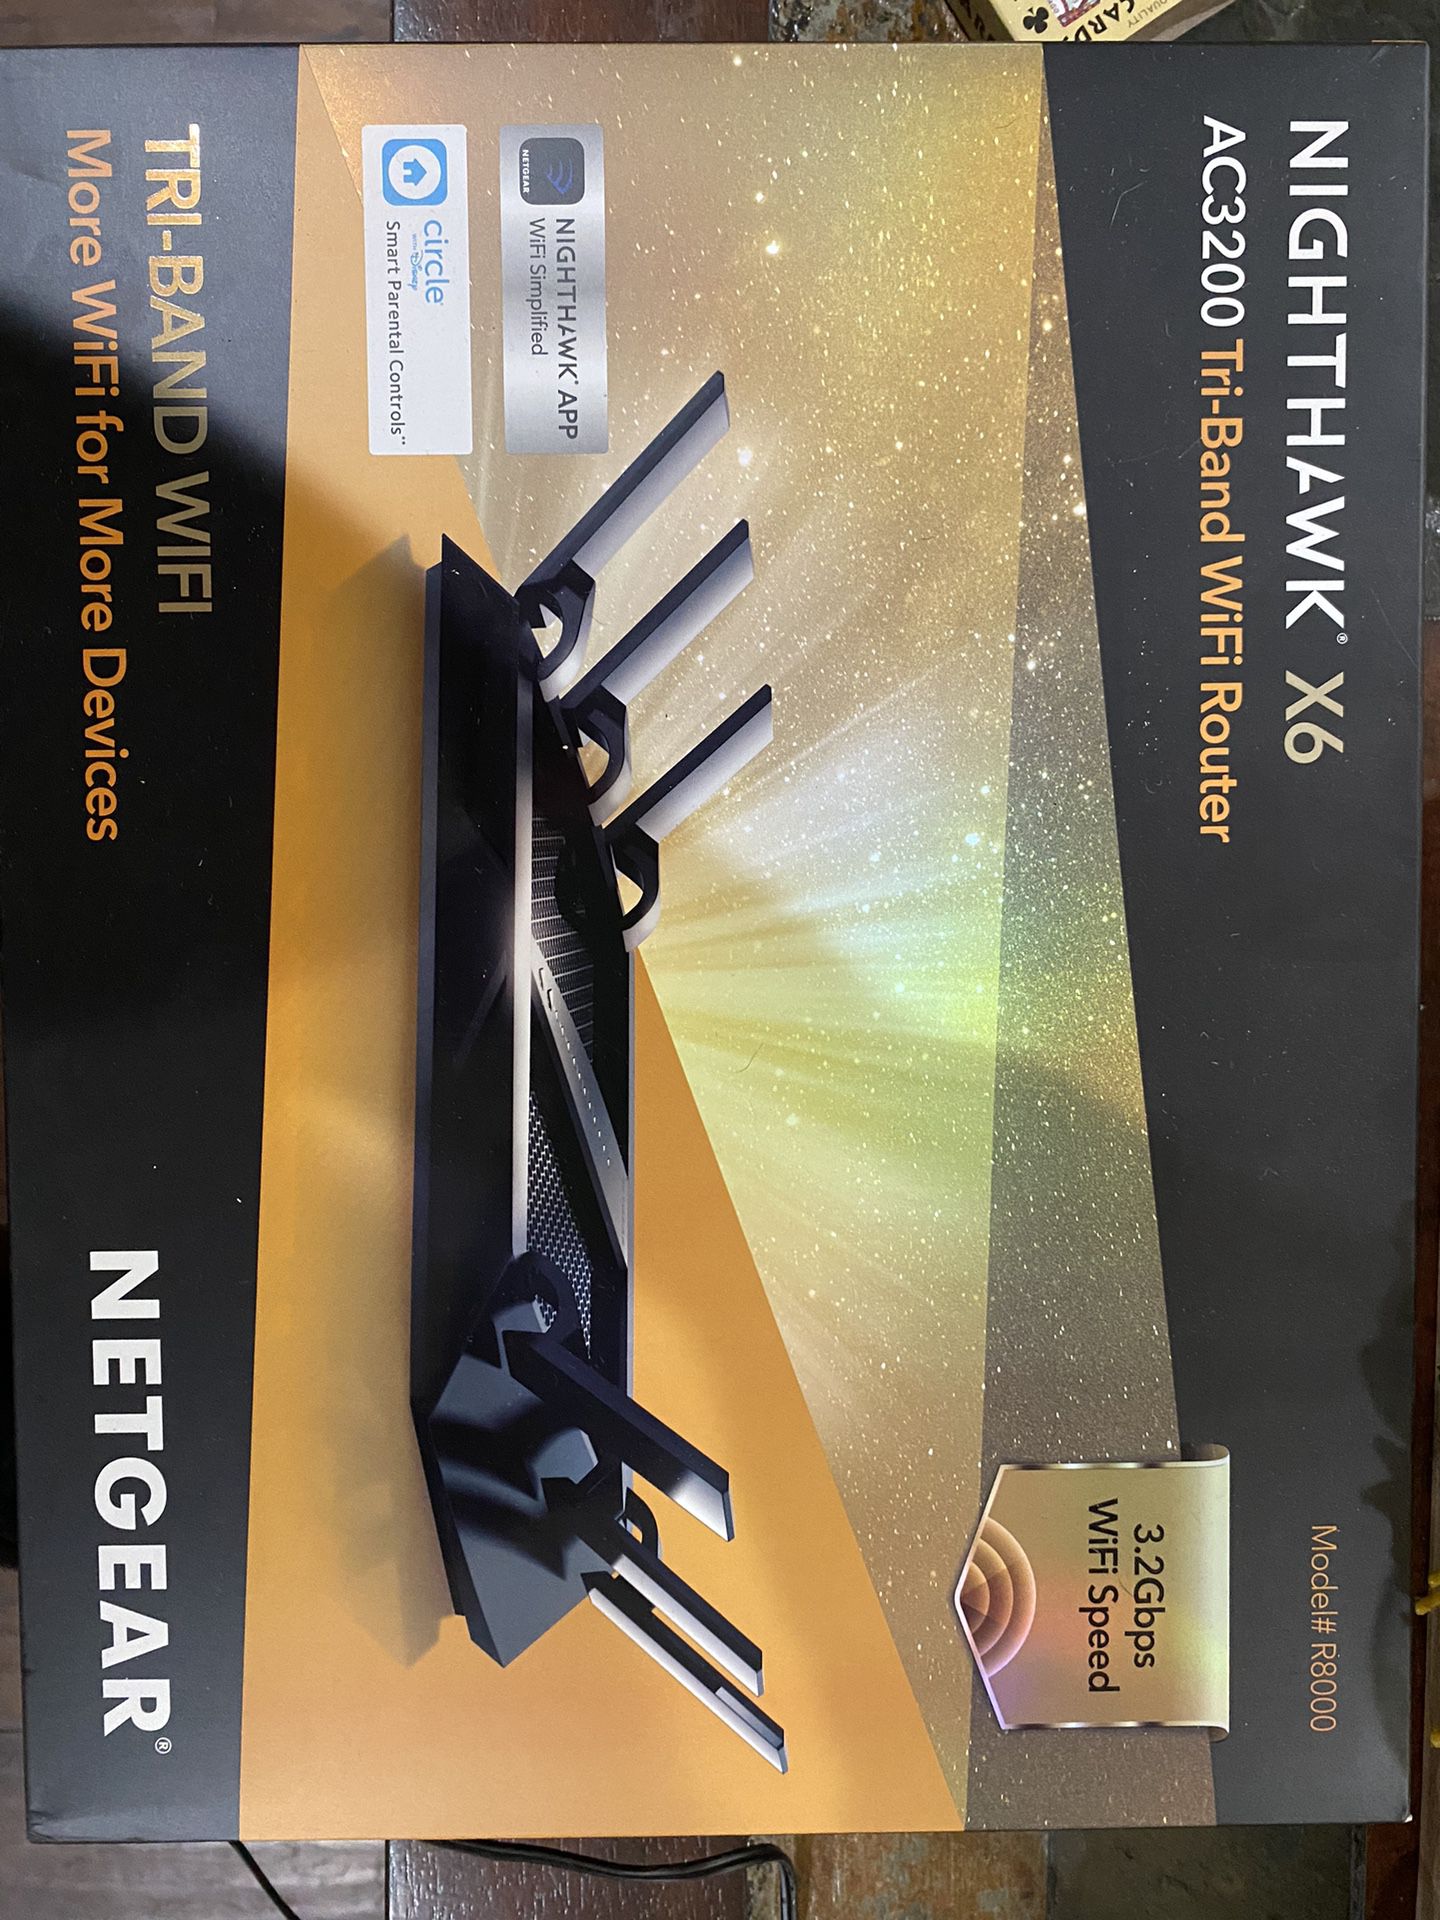 Netgear Nighthawk X6 Router 